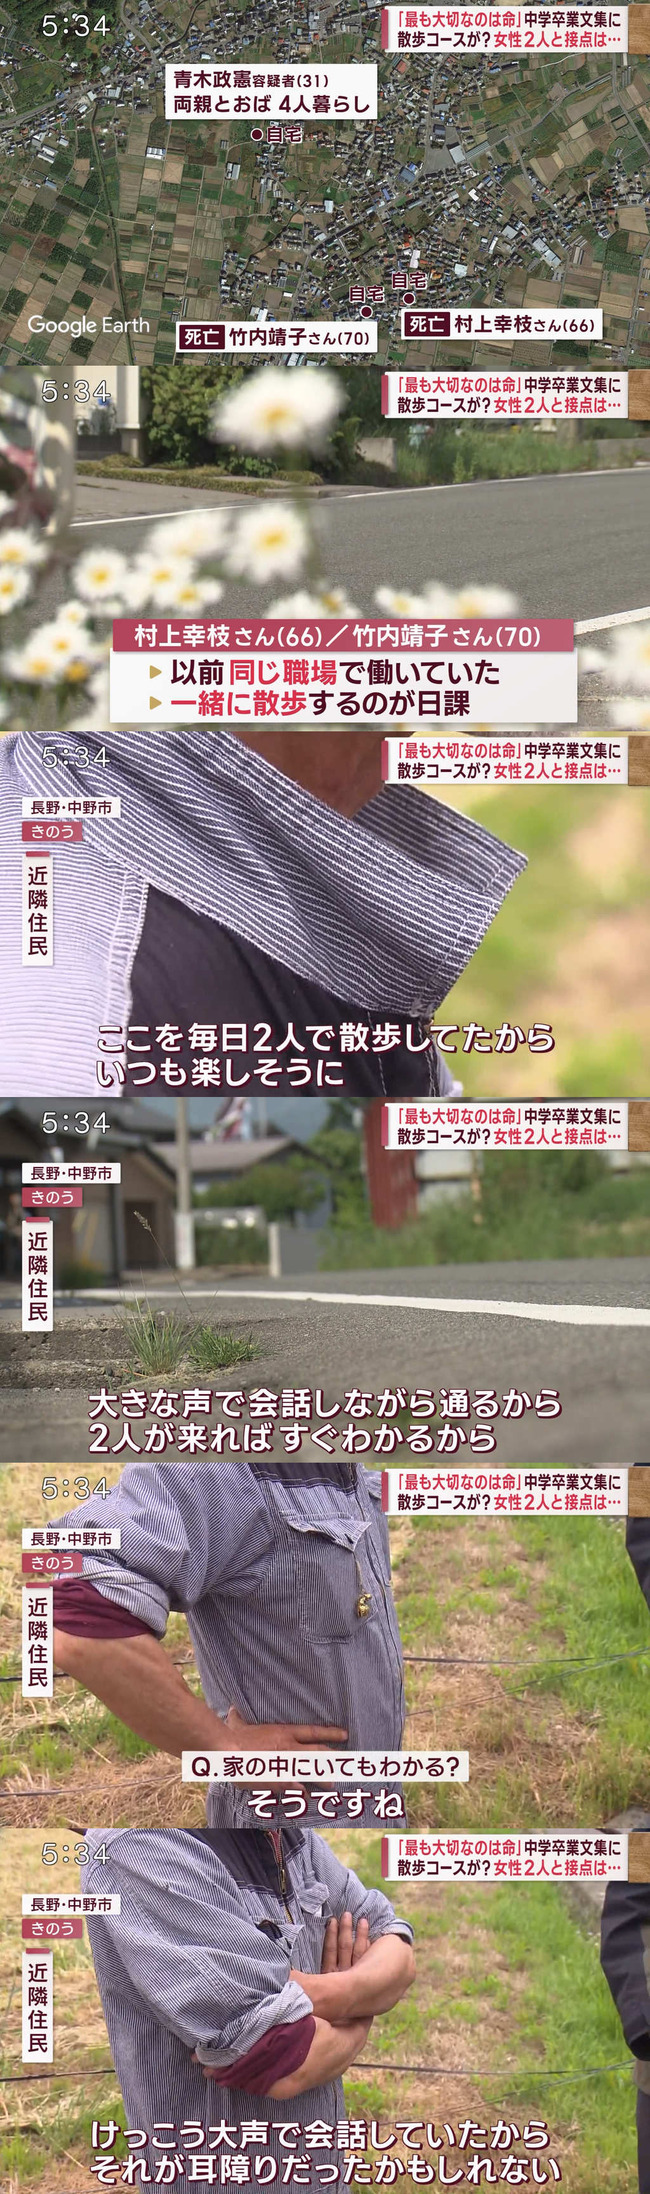 長野被害女性、毎日青木家宅の前を大きな声で談笑しながら散歩していた